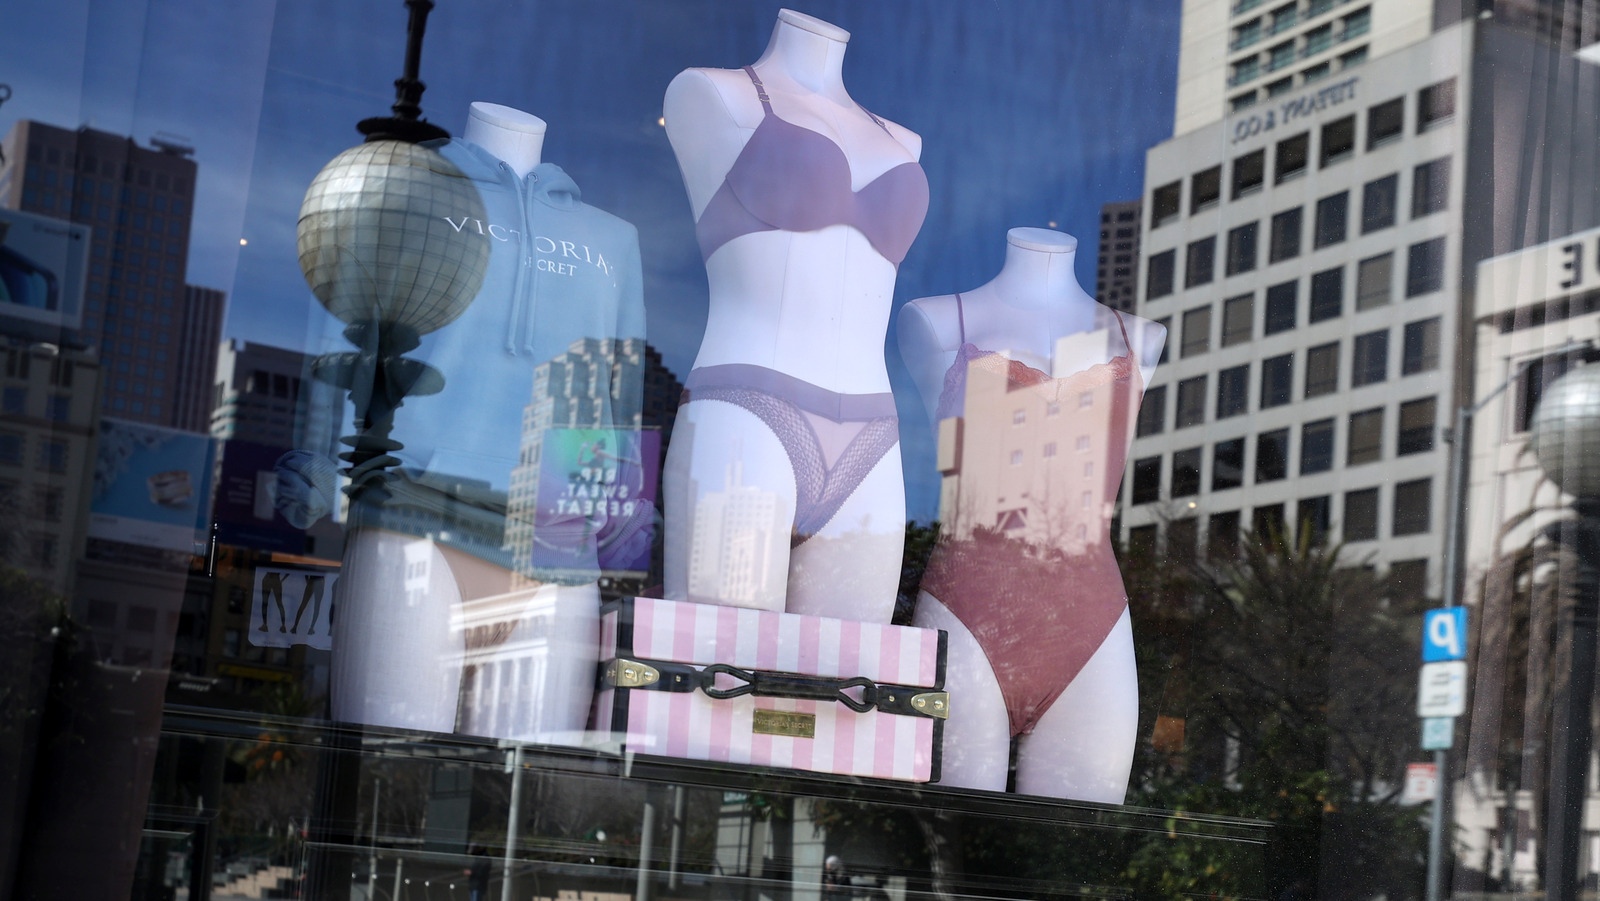 Do Victoria's Secret bras run small? - Quora